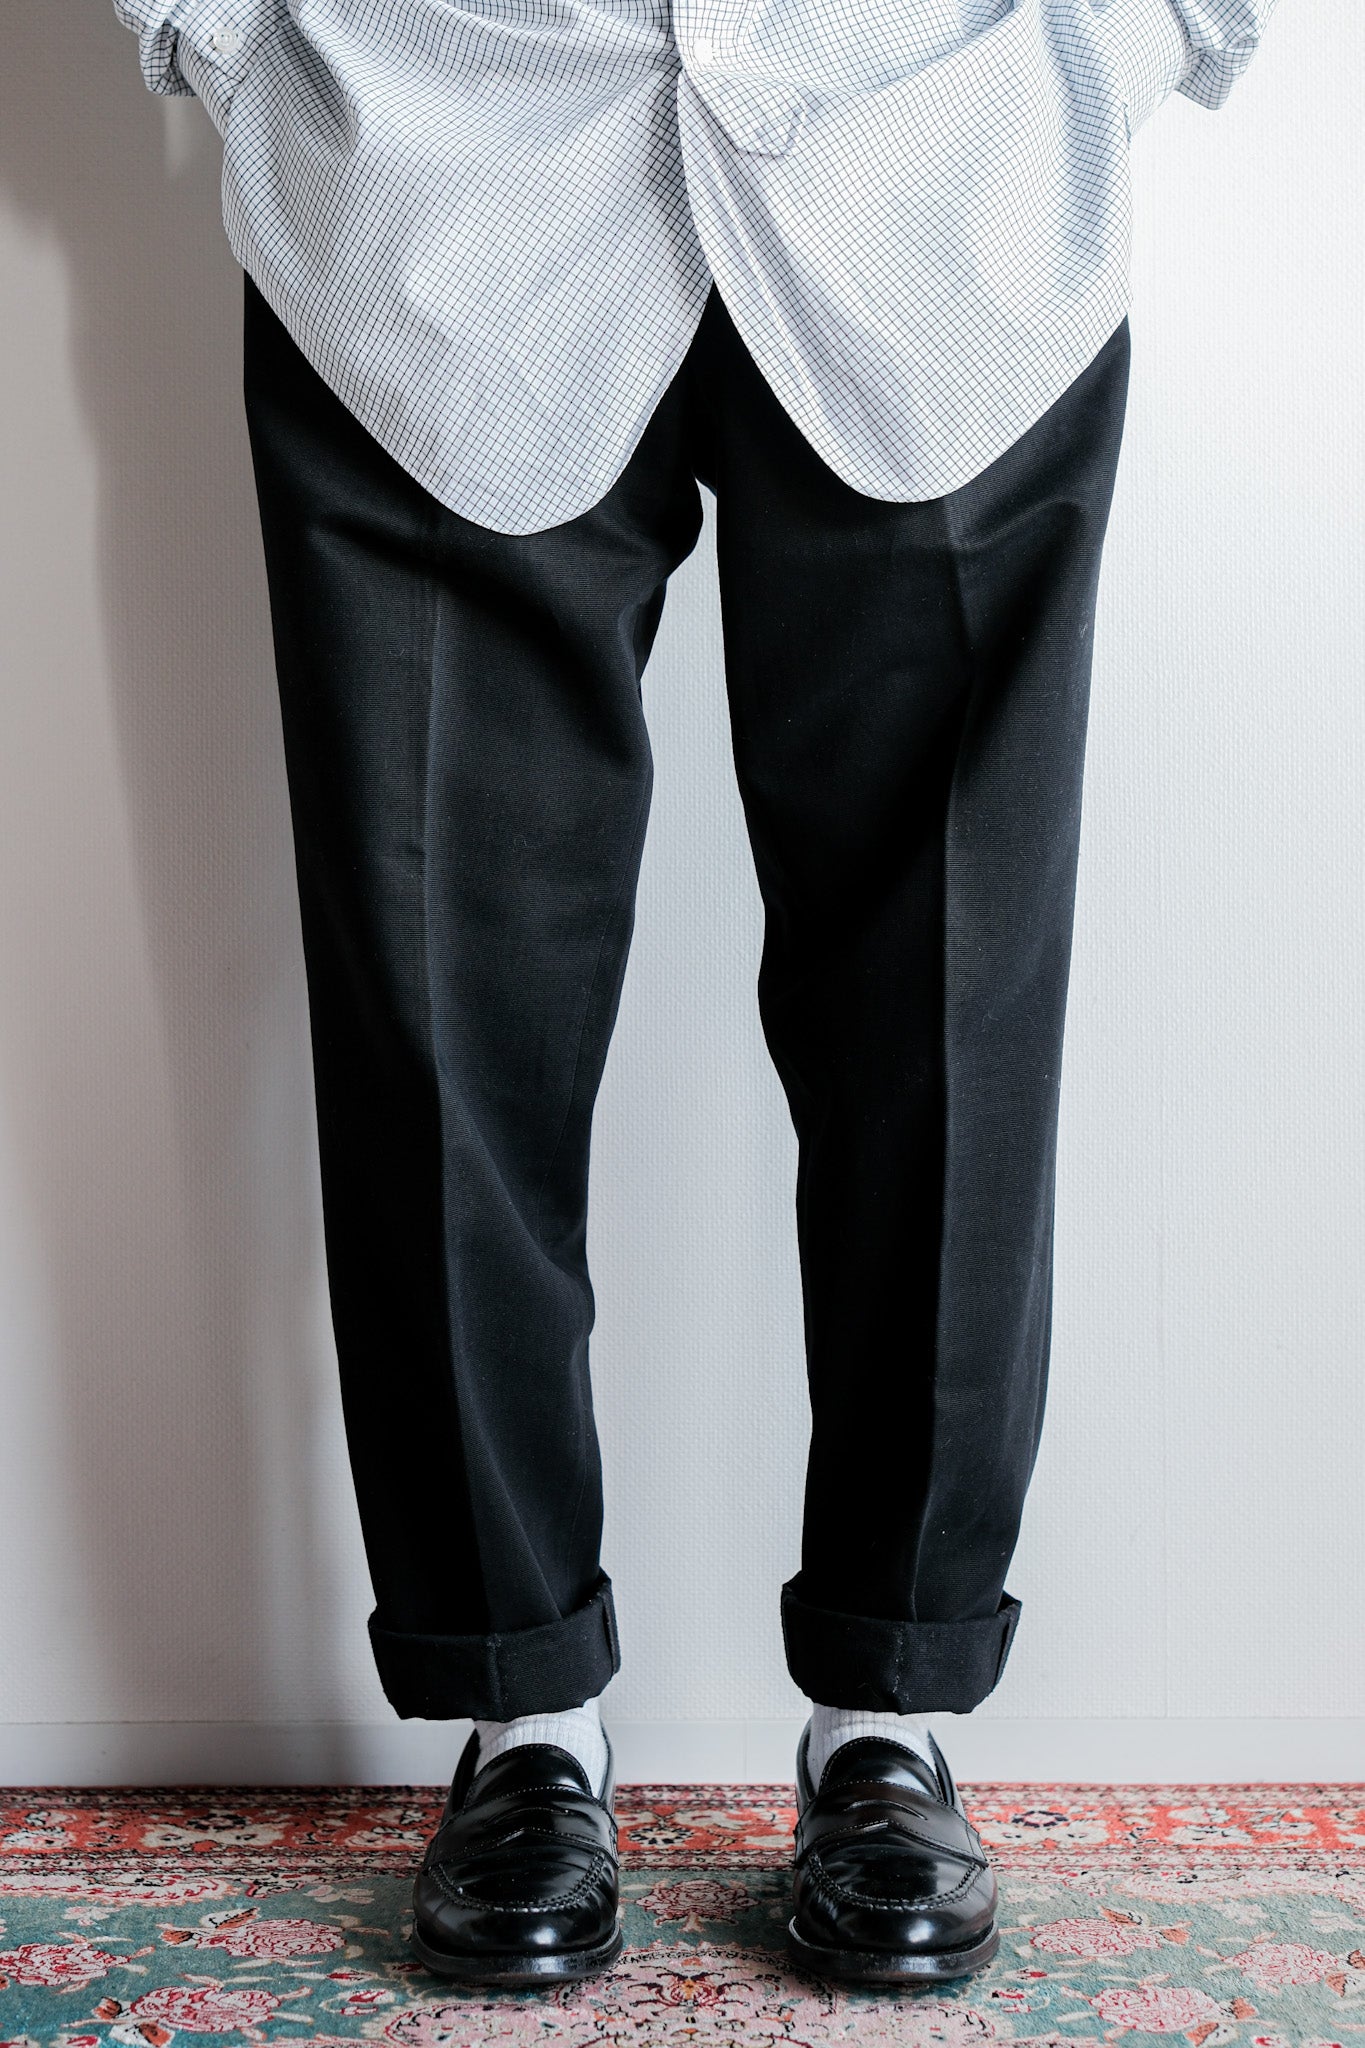 [〜00's]舊阿尼斯巴黎的棉質褲子大小。42